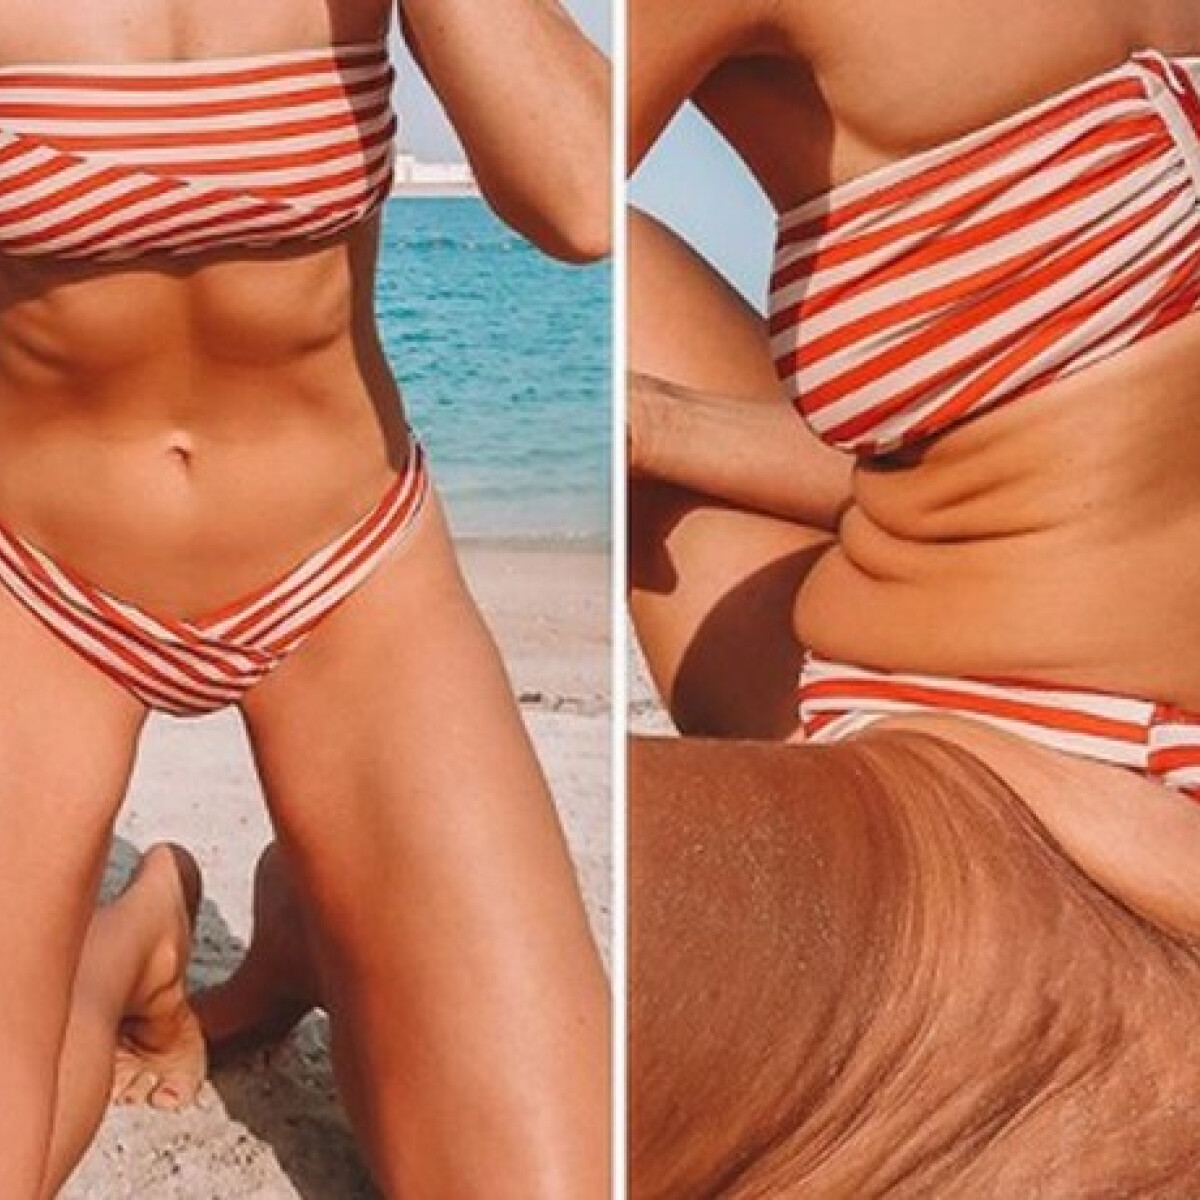 Végre valaki, aki megmutatja, hogy hazudnak a képünkbe az Instagram bikinis fotói